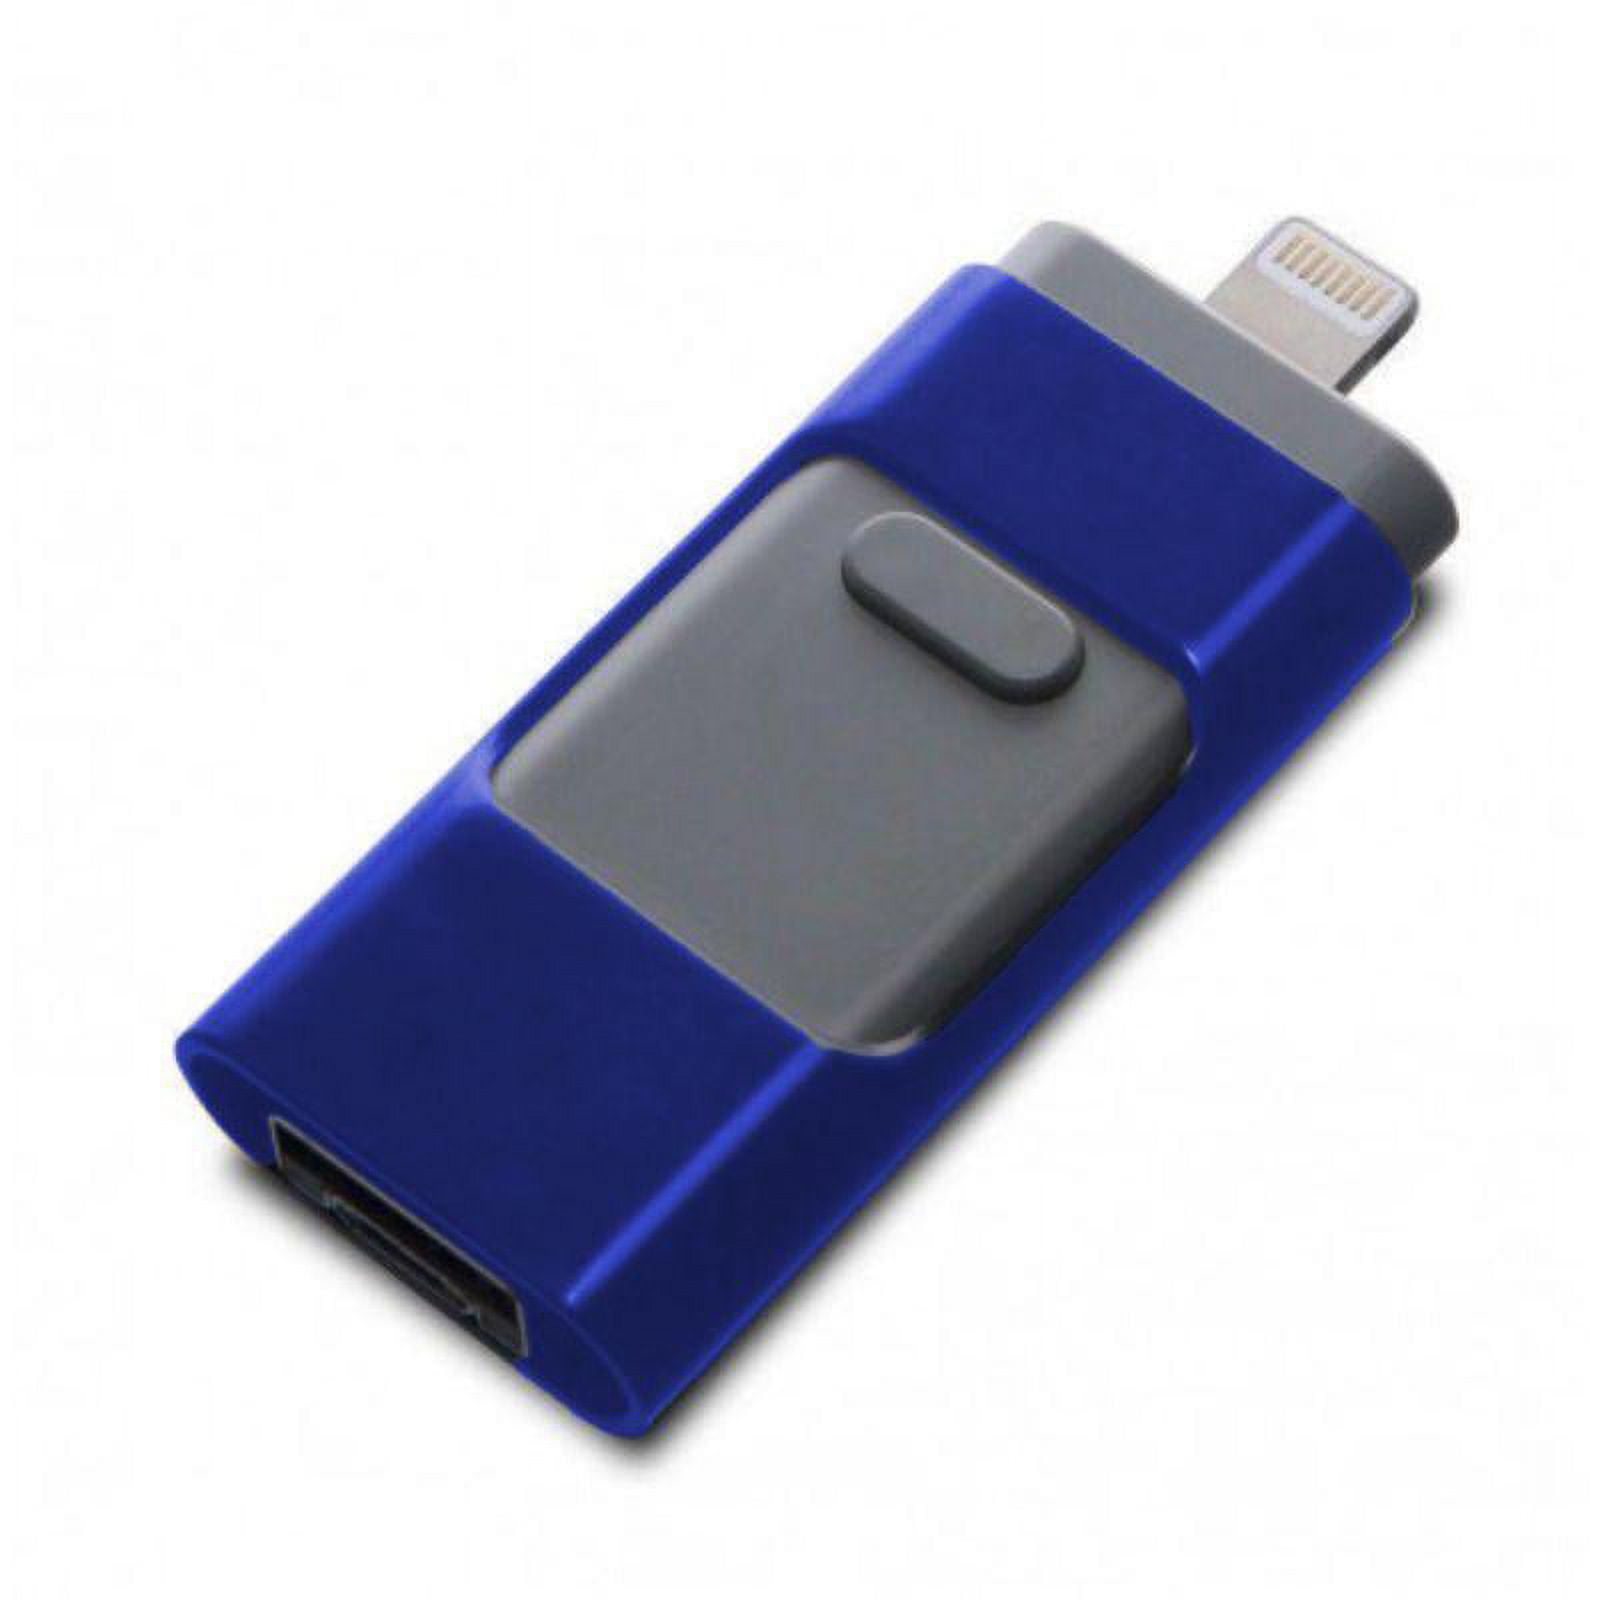 Fcntech - Memoria USB para iPhone, iPad, iPod, memoria flash